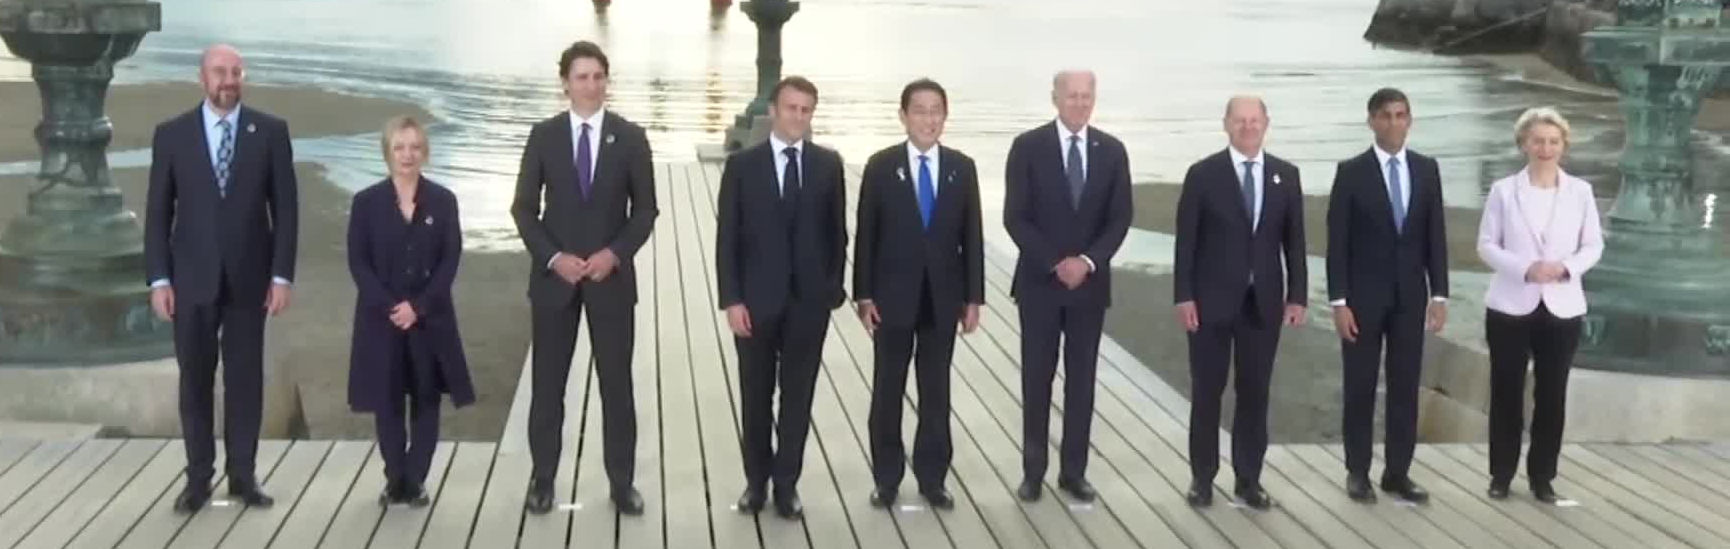 Die G7 flankiert von der EU